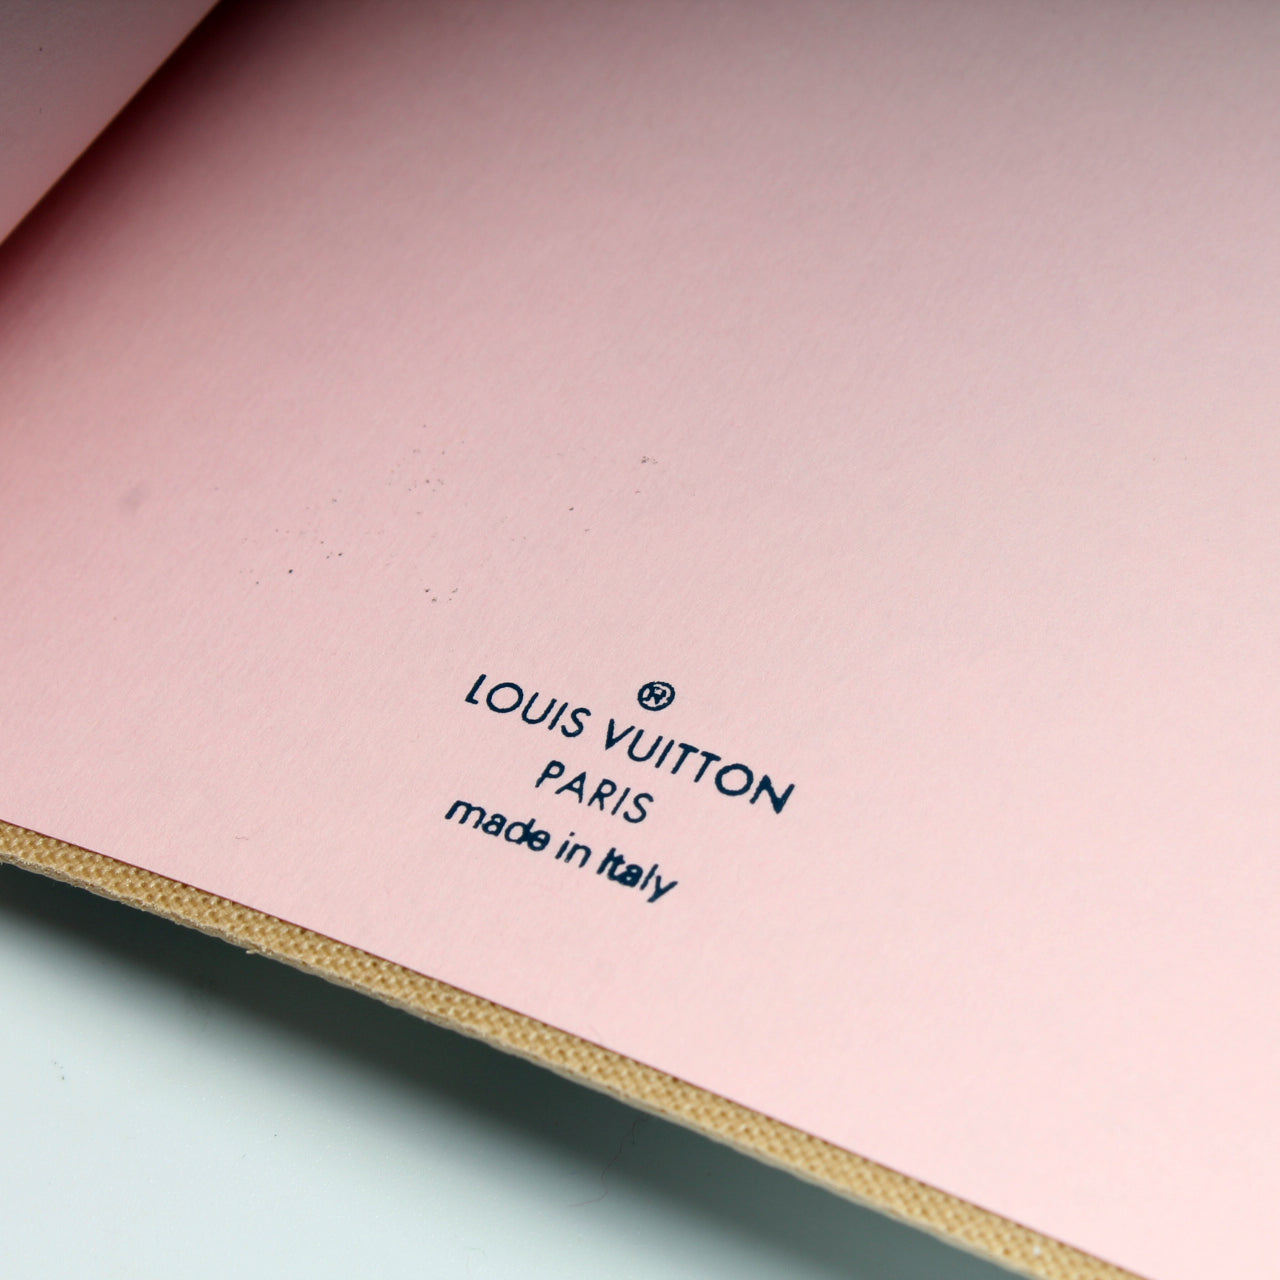 NIP Louis Vuitton Summer Trunks Damier Azur Clemence MM Notebook GI0261